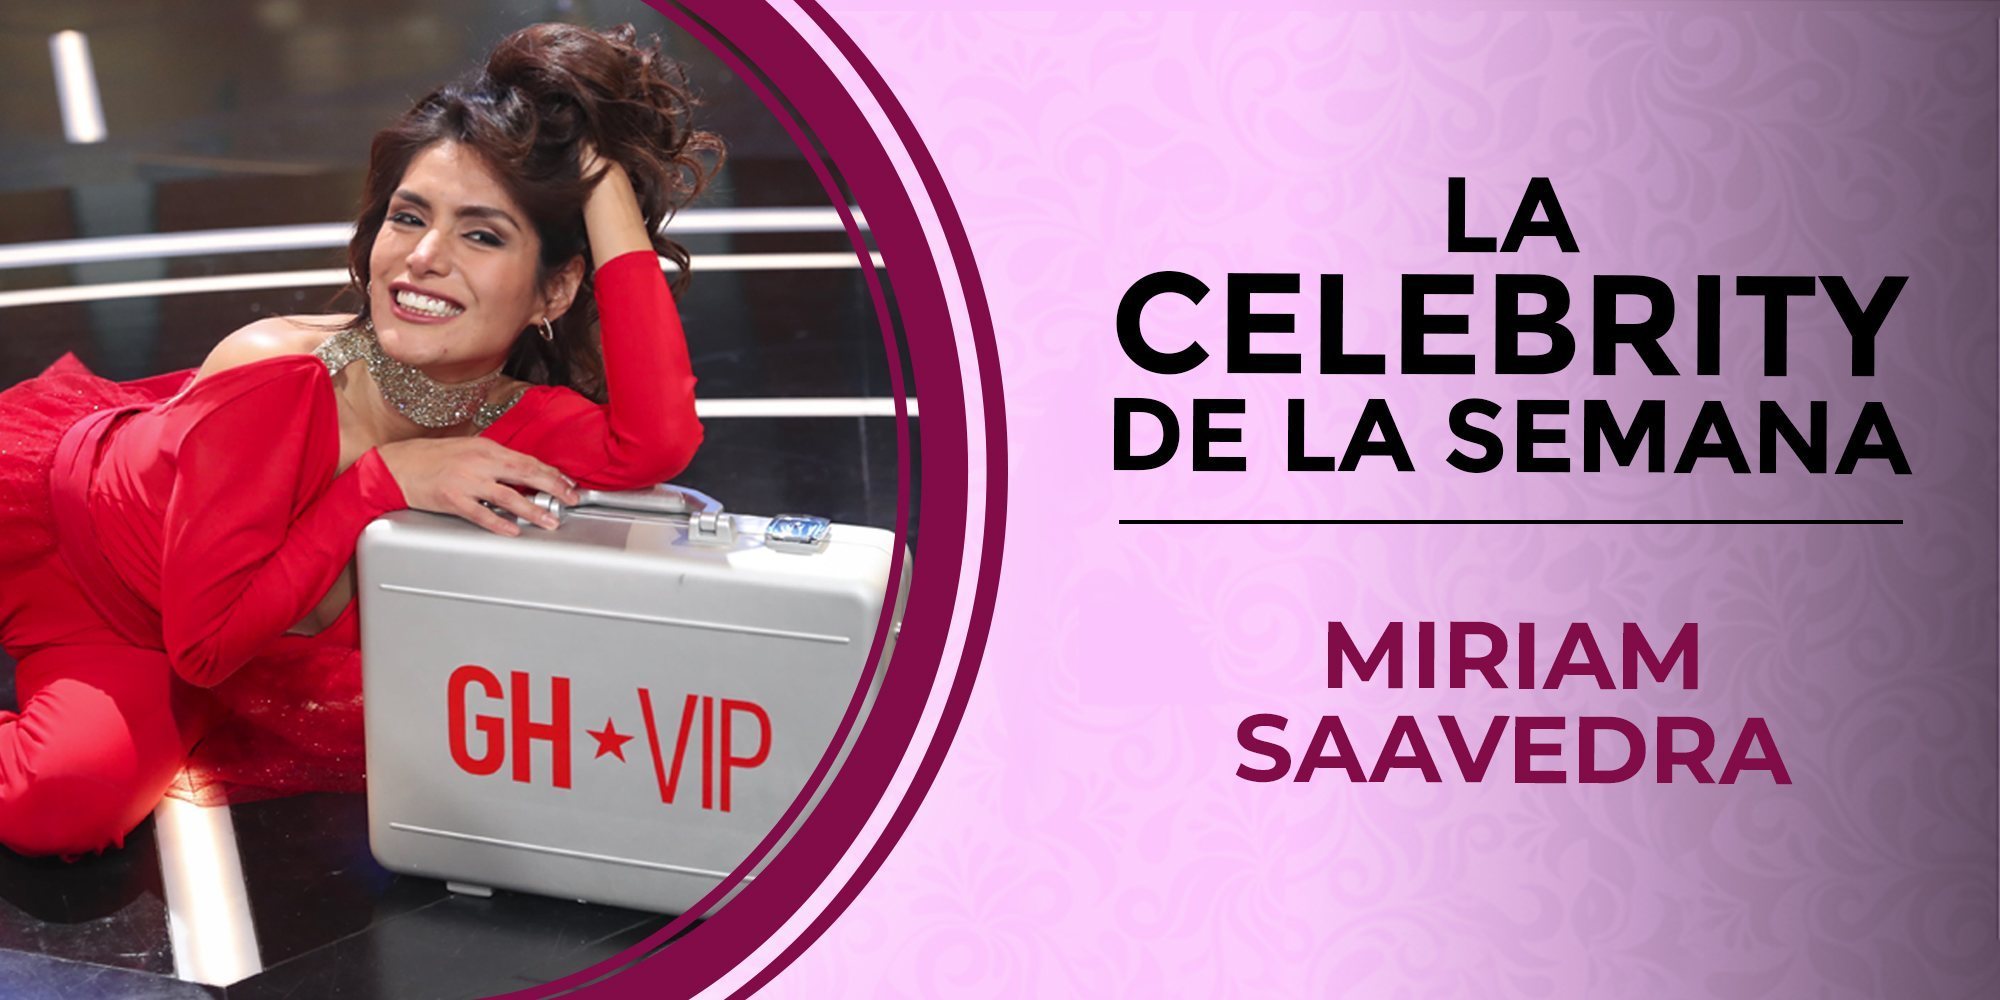 Miriam Saavedra, la celebrity de la semana por ganar 'Gran Hermano VIP 6': sus polémicas pasadas, presentes y futuras